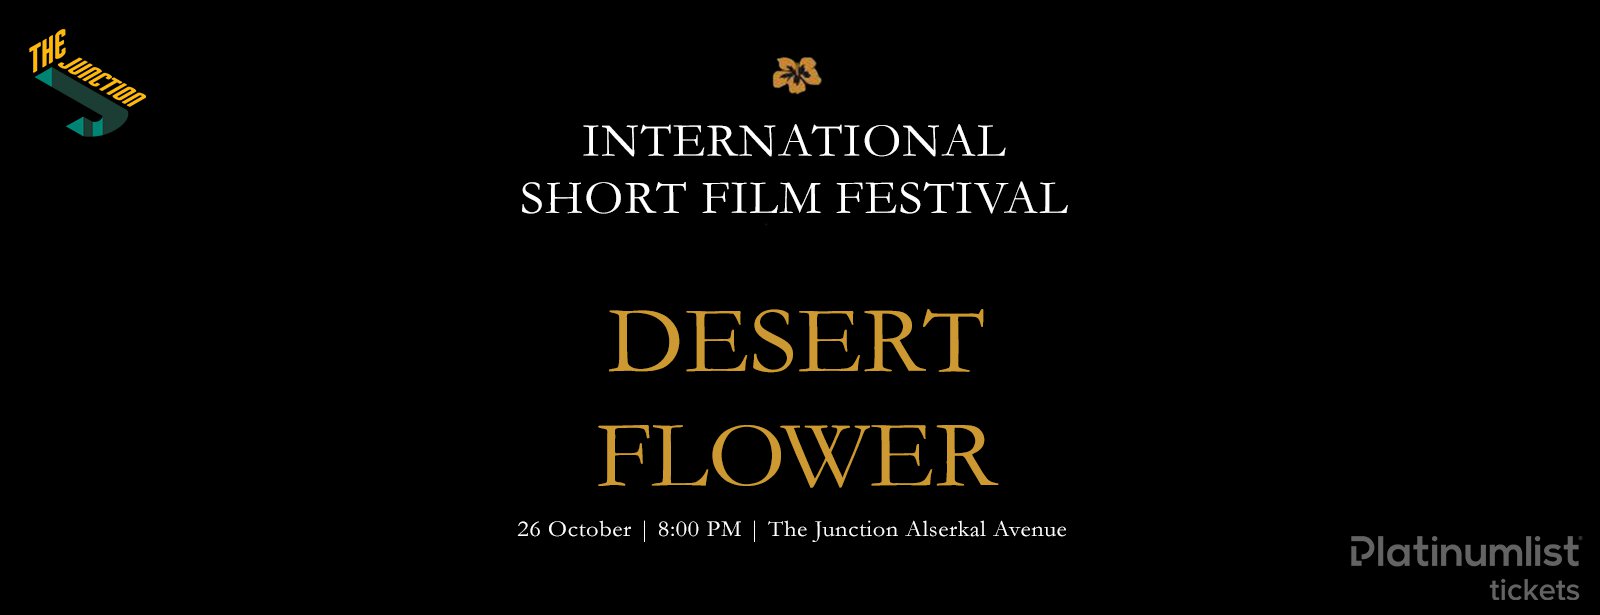 Desert Flower 2018 – International Short Film Festival - Coming Soon in UAE